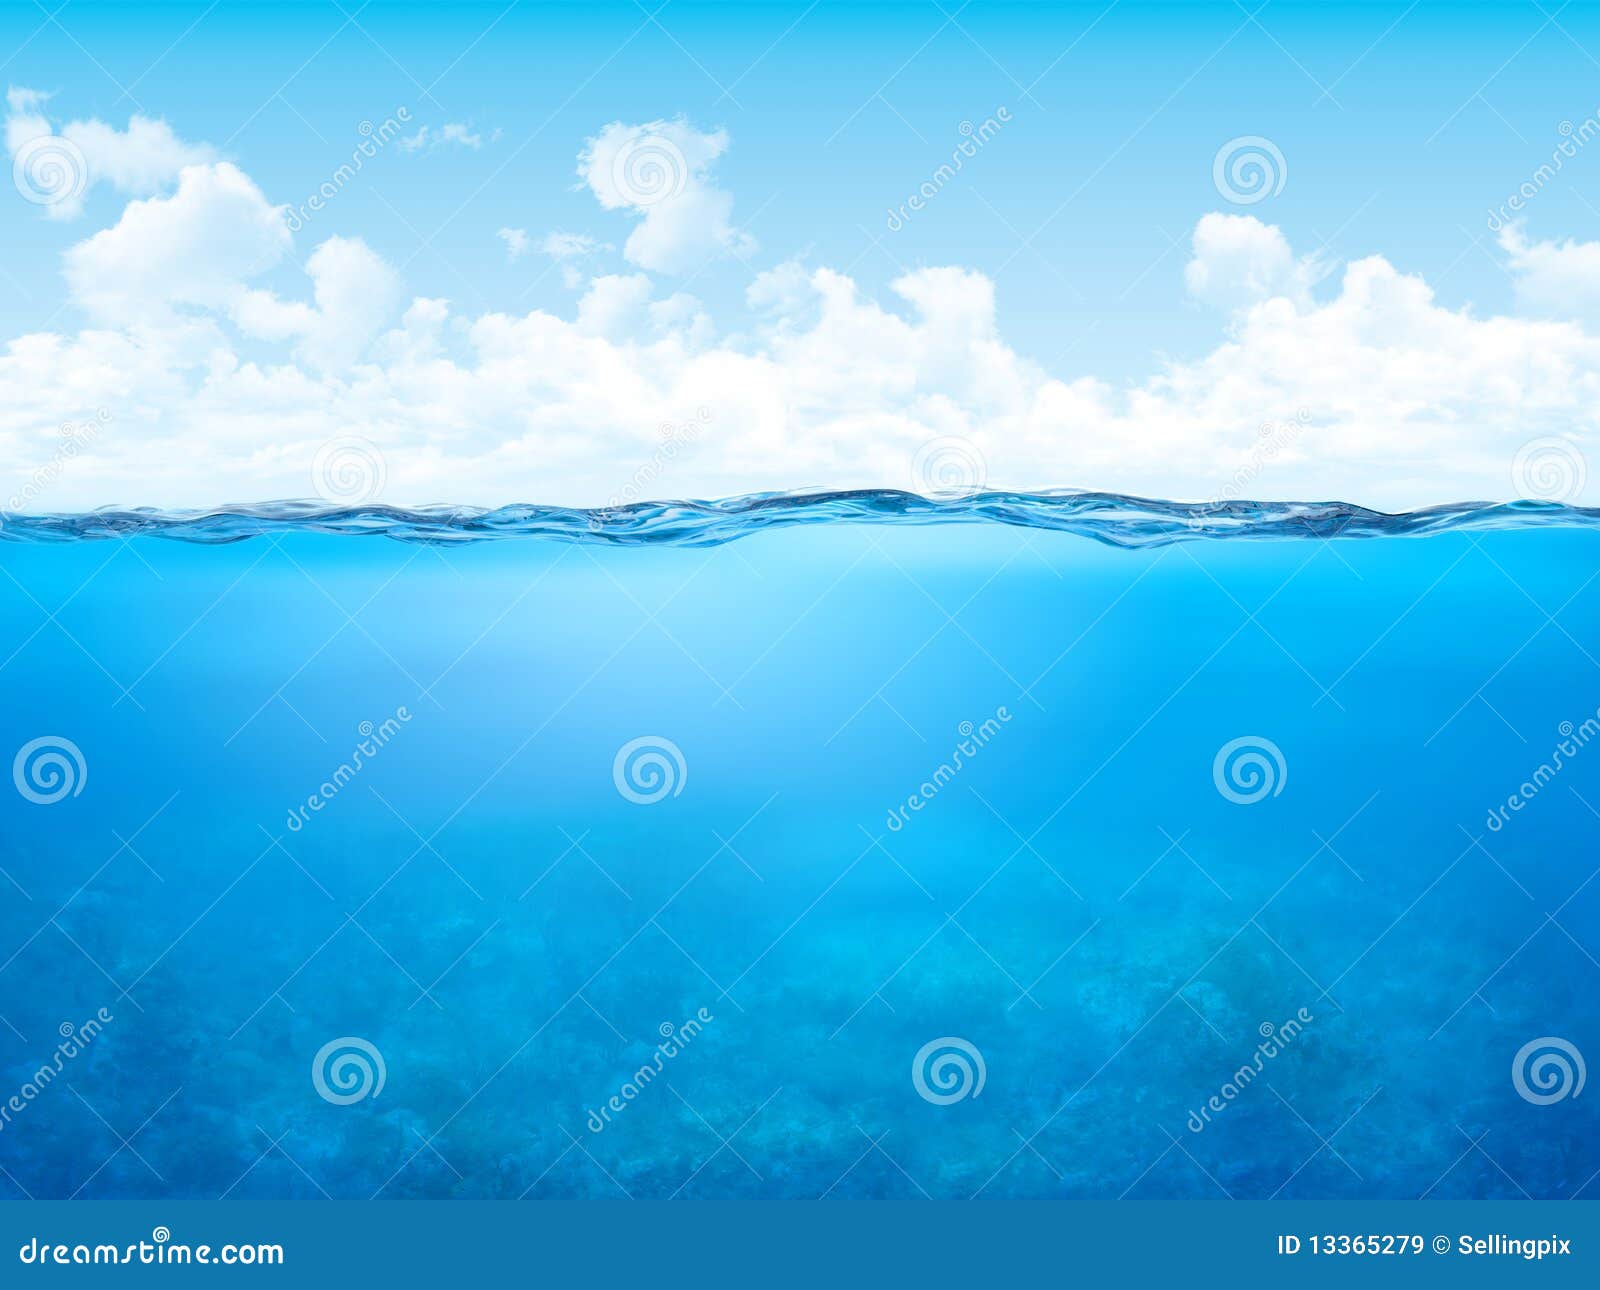 waterline and underwater background